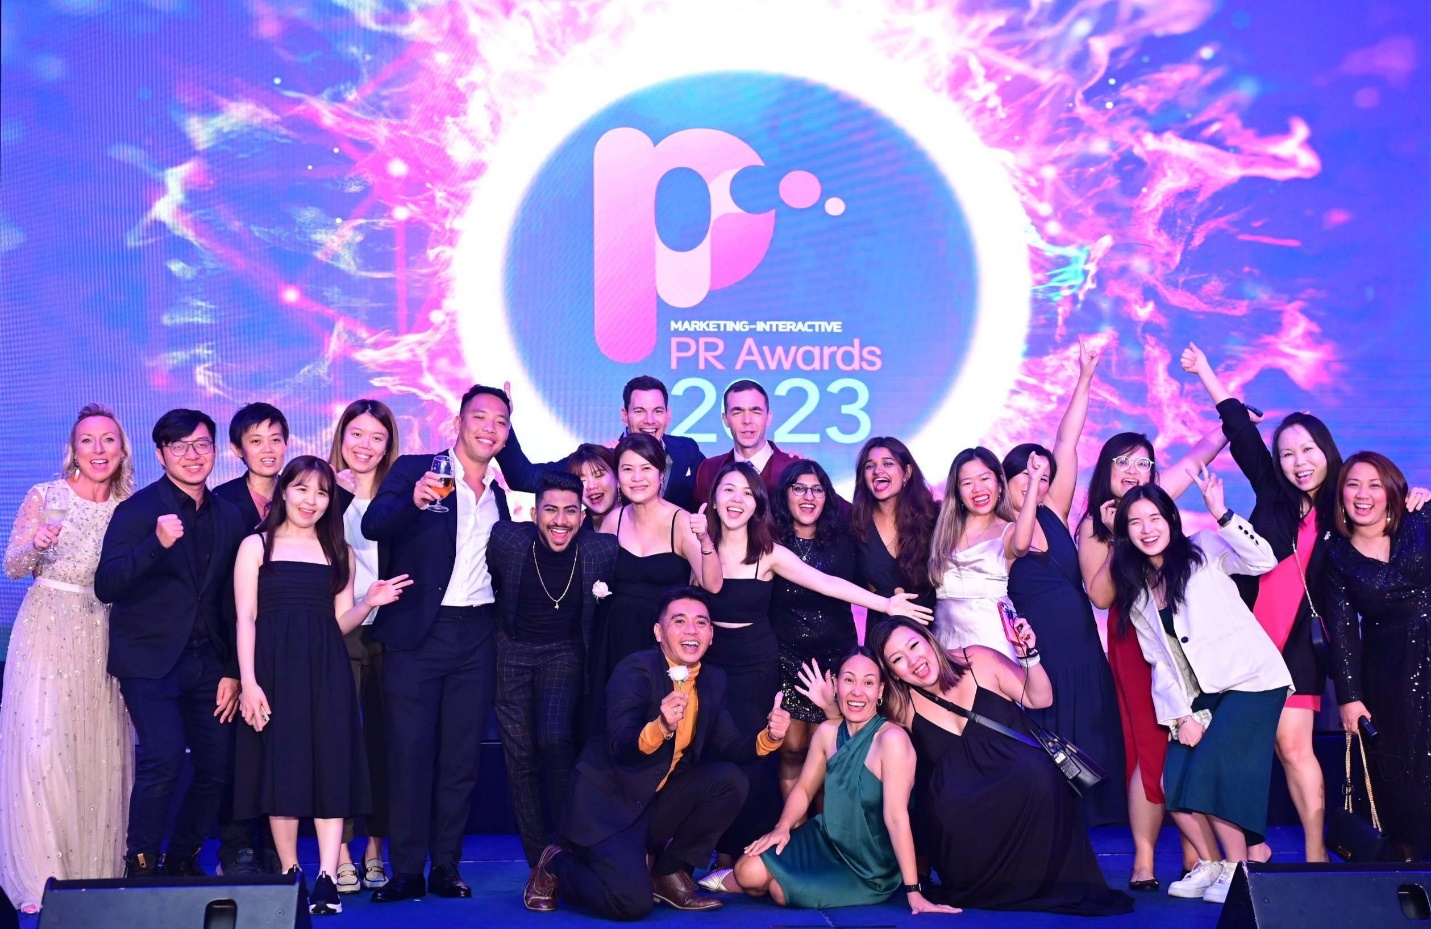 VietnamWorks – Thương hiệu tuyển dụng uy tín tại Việt Nam chiến thắng giải thưởng PR Awards danh giá - Ảnh 1.